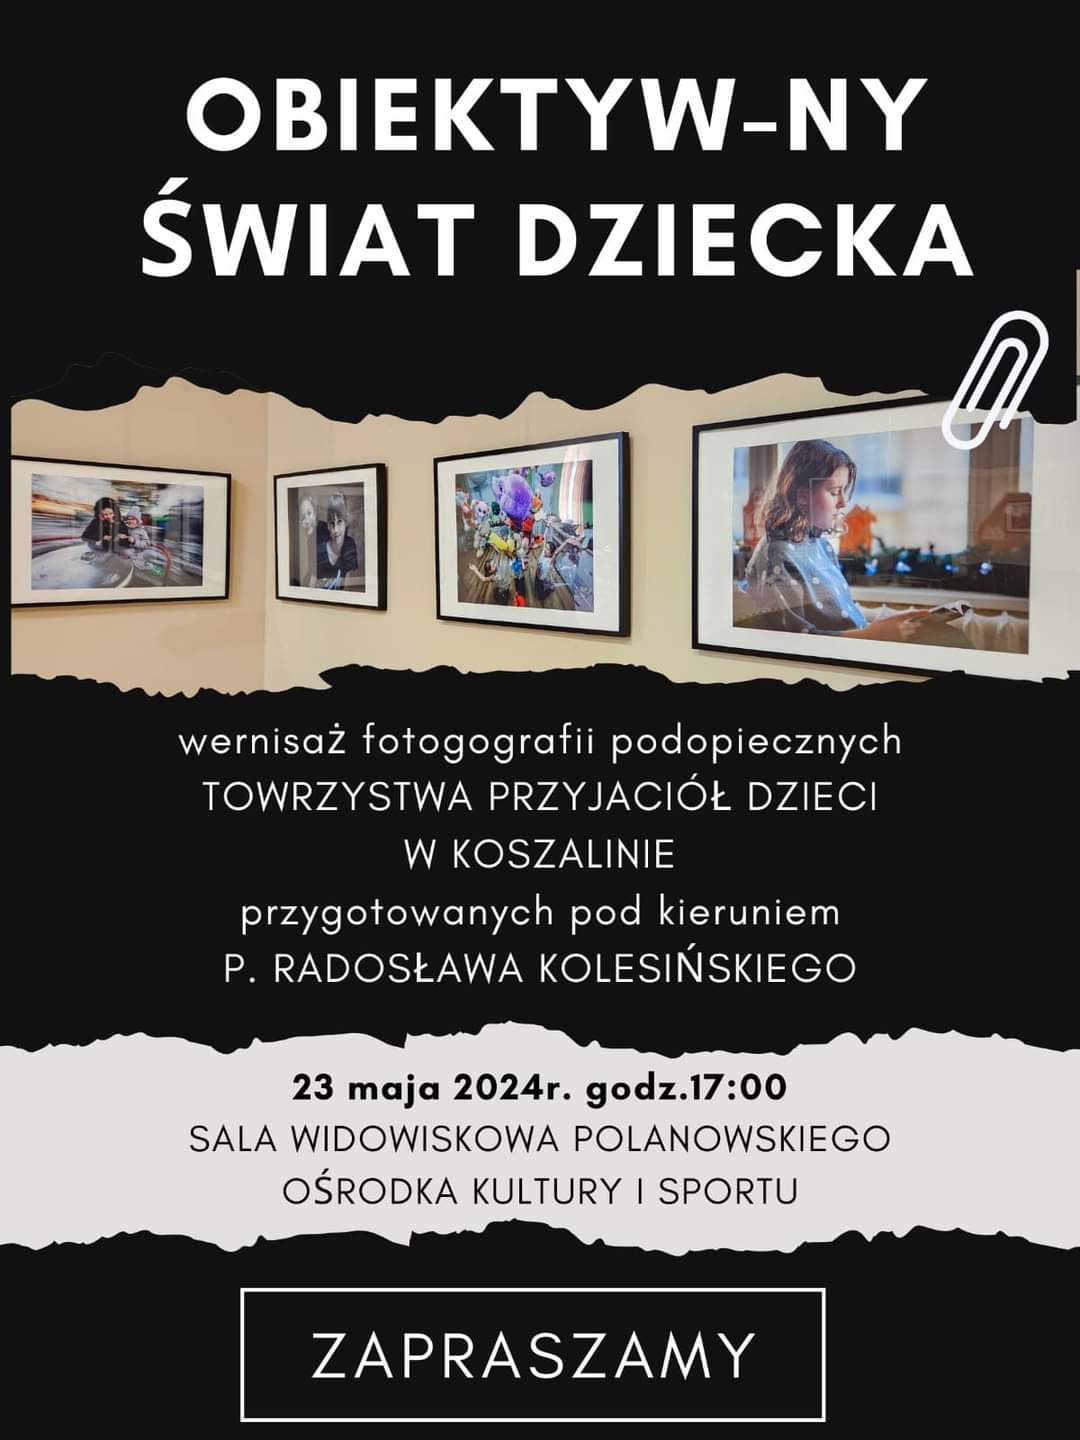 Plakat z zaproszeniem na wernisaż fotografii podopiecznych Towarzystwa Przyjaciół Dzieci w Koszalinie 23 maja 2024